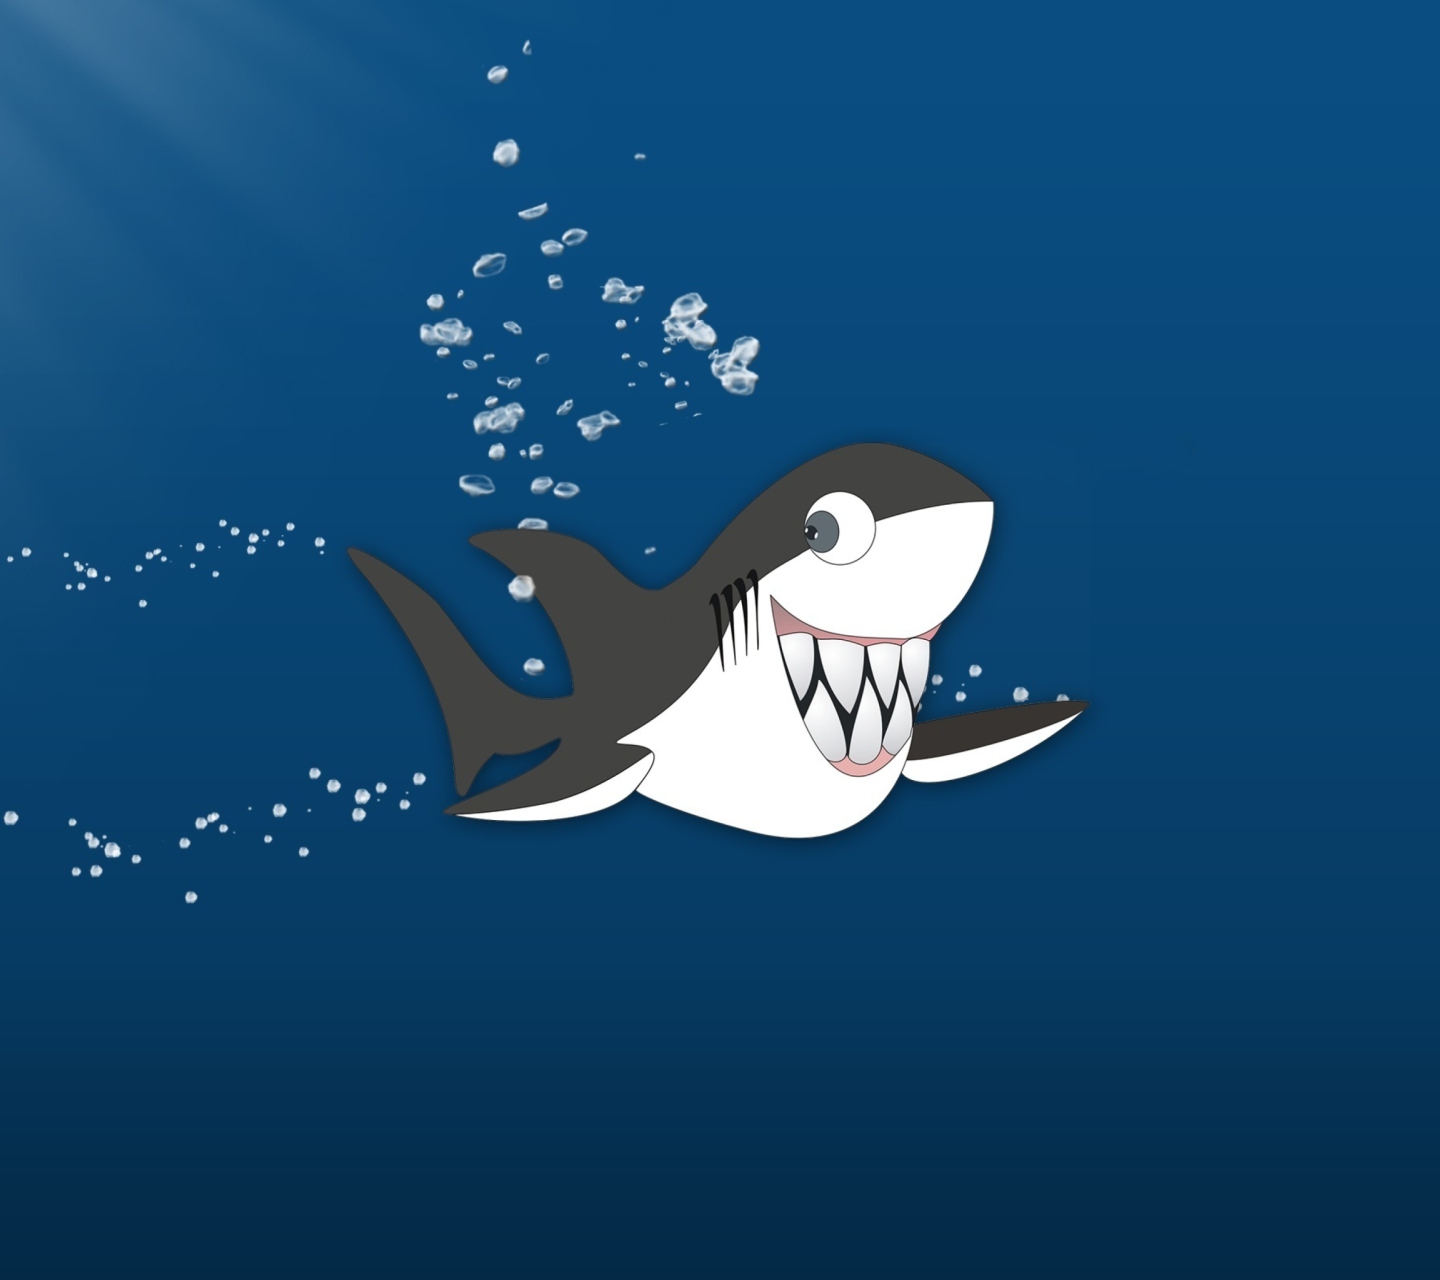 Funny Shark wallpaper 1440x1280